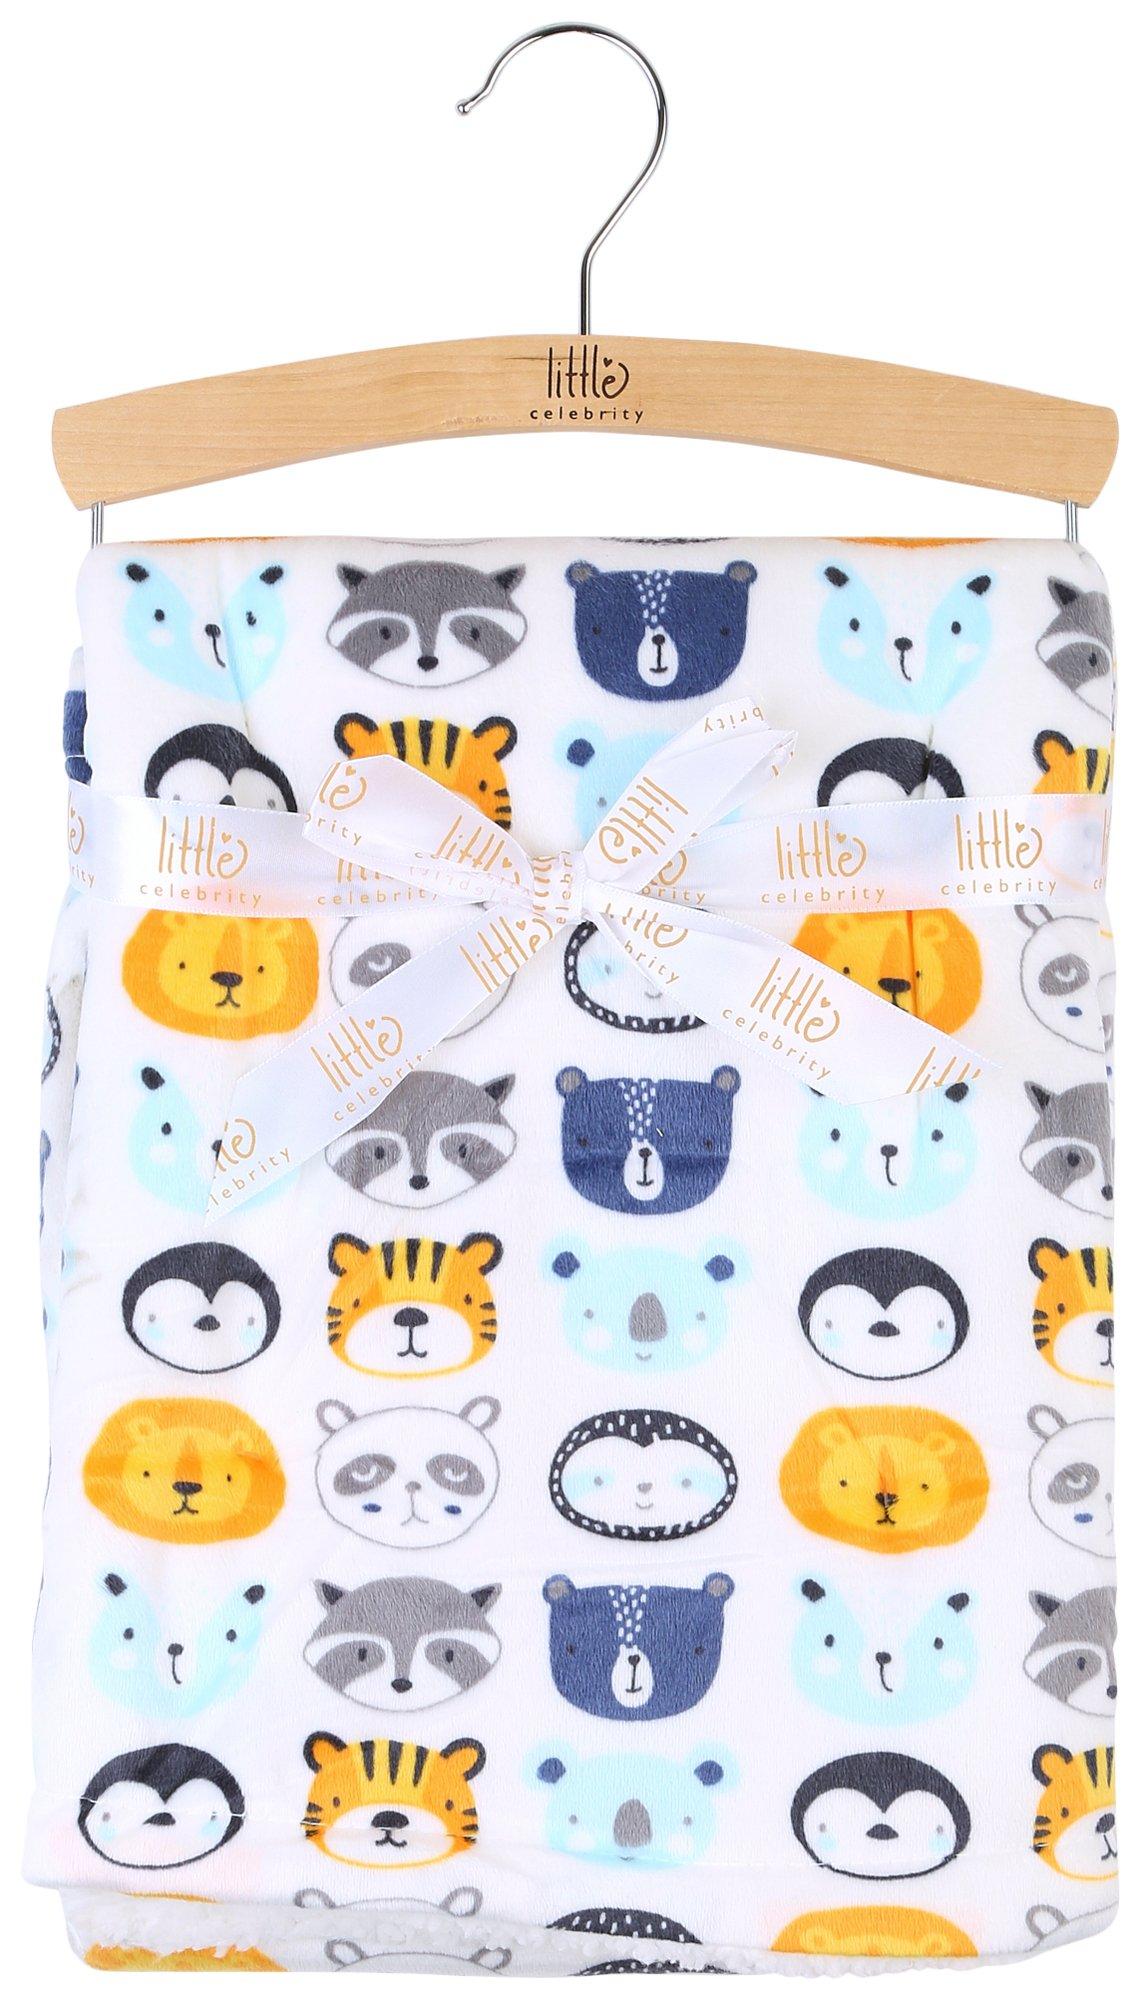 Little Celebrity Baby Daniel Animal Sherpa 30x40  Blanket